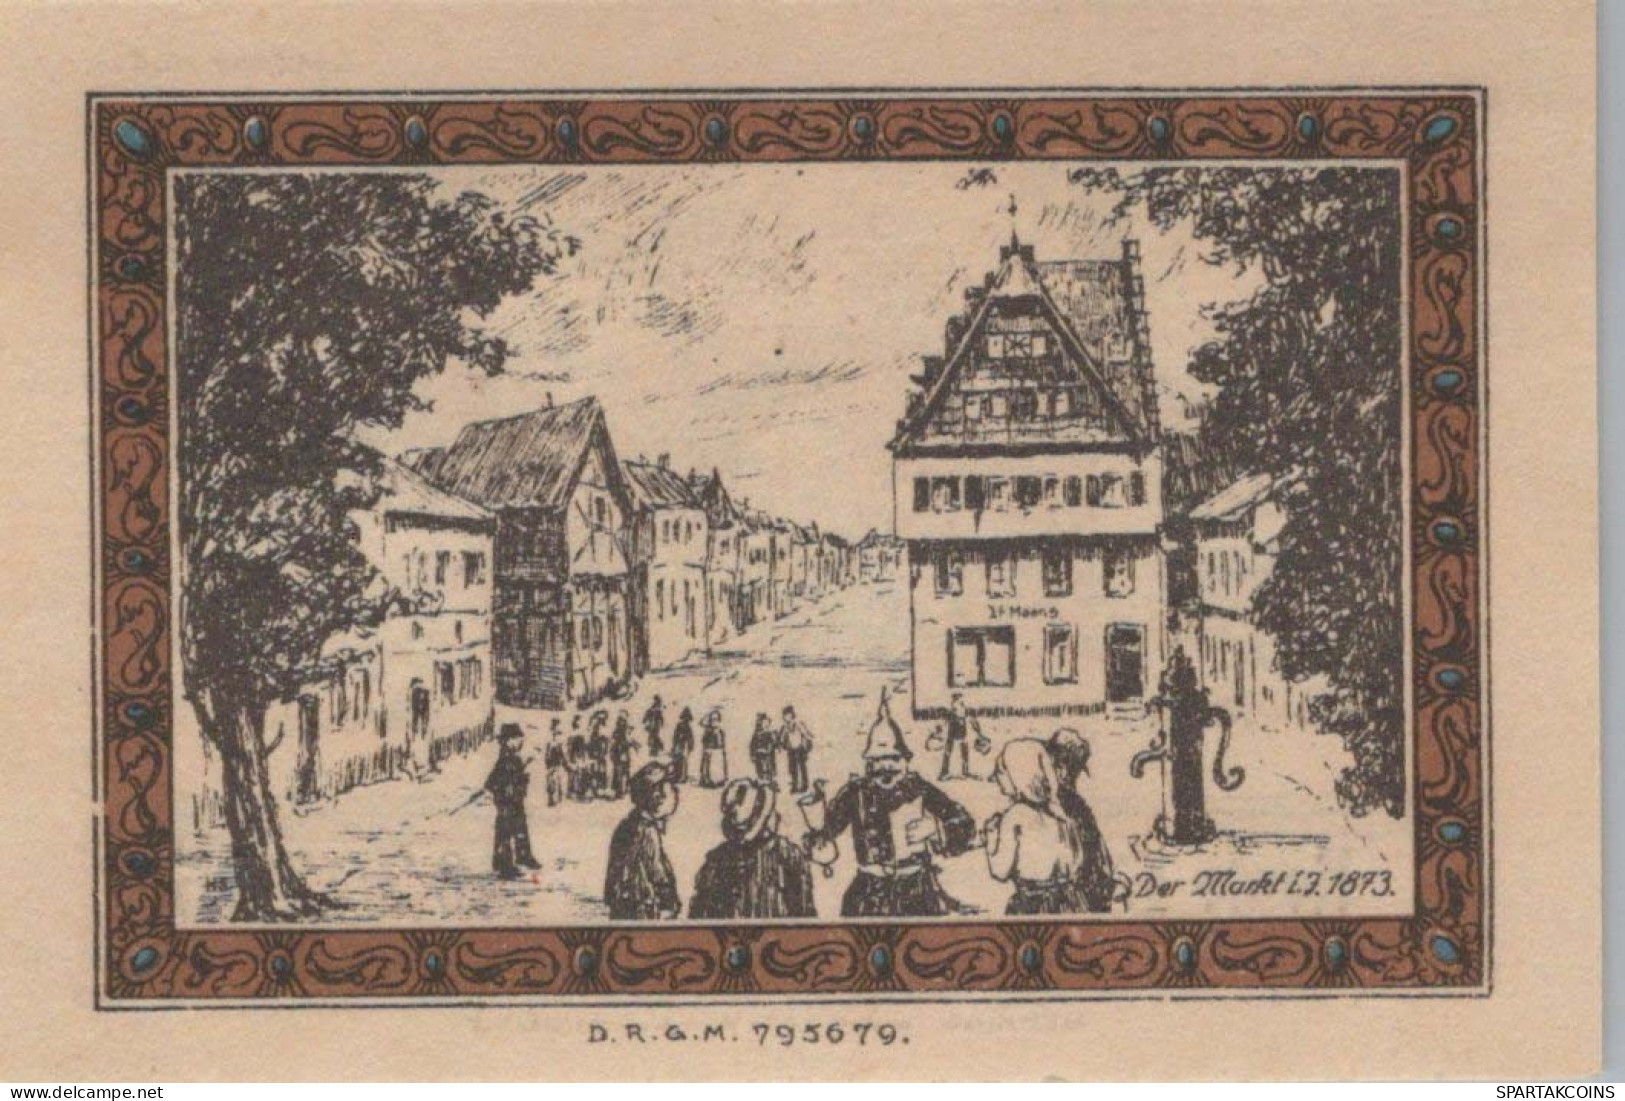 50 PFENNIG 1922 Stadt BRÜHL IM RHEINLAND Rhine UNC DEUTSCHLAND Notgeld #PA315 - [11] Local Banknote Issues